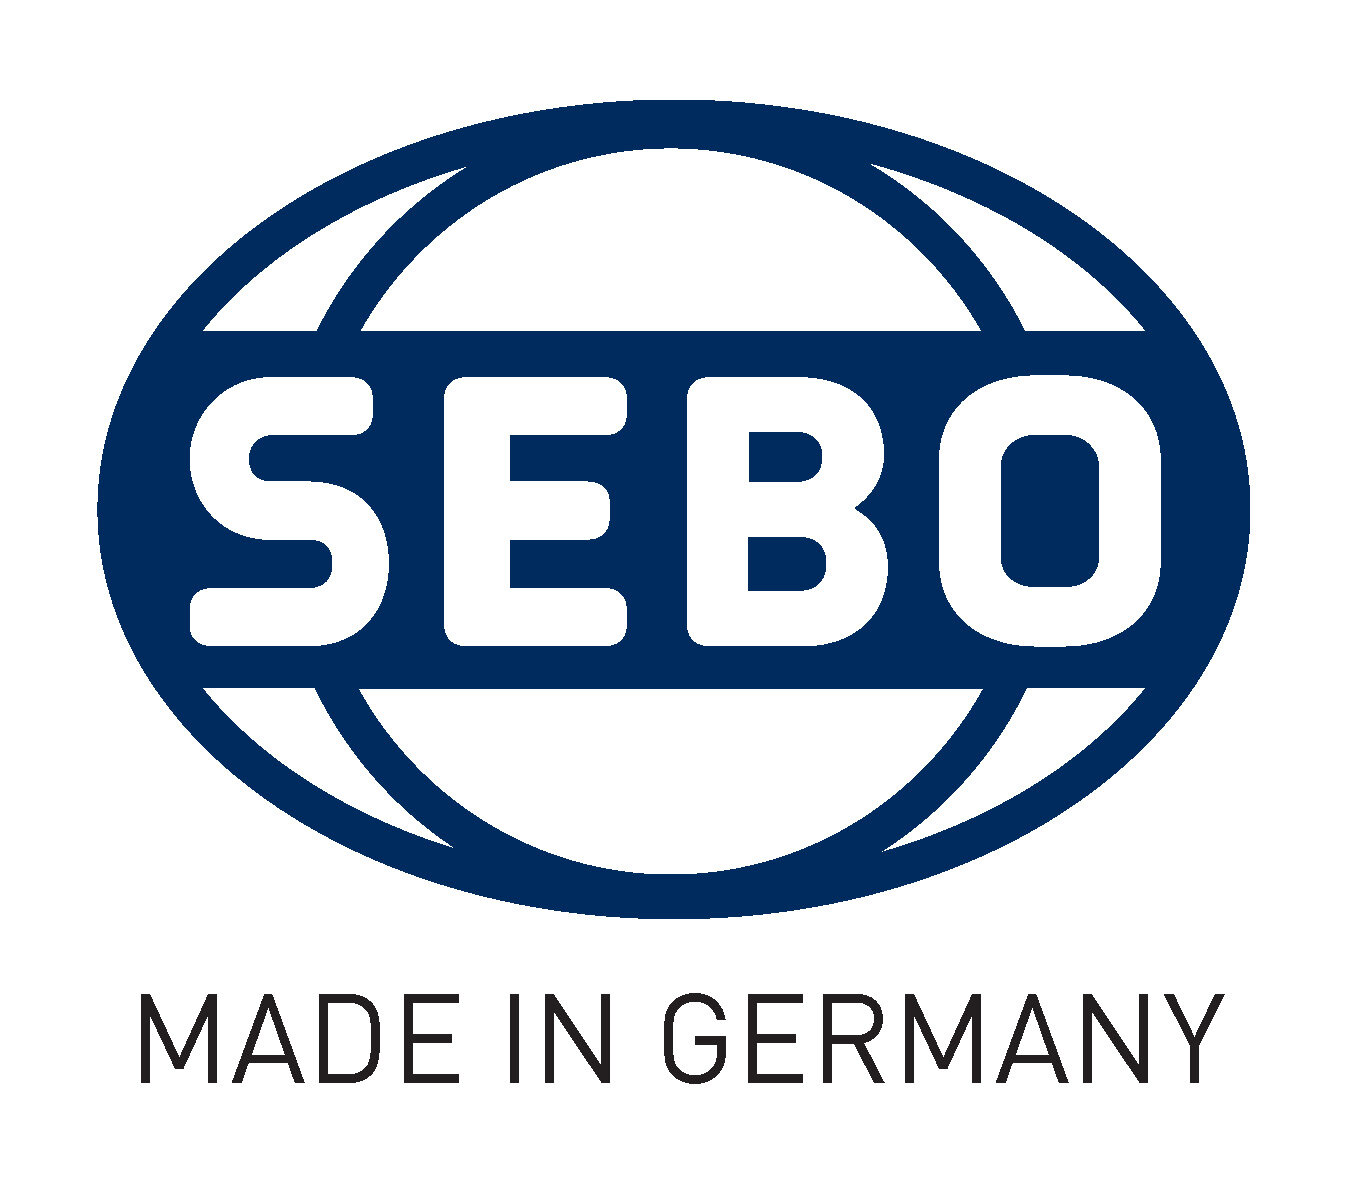 SEBO-Made-in-Germany-LOGO-1 (1).jpg